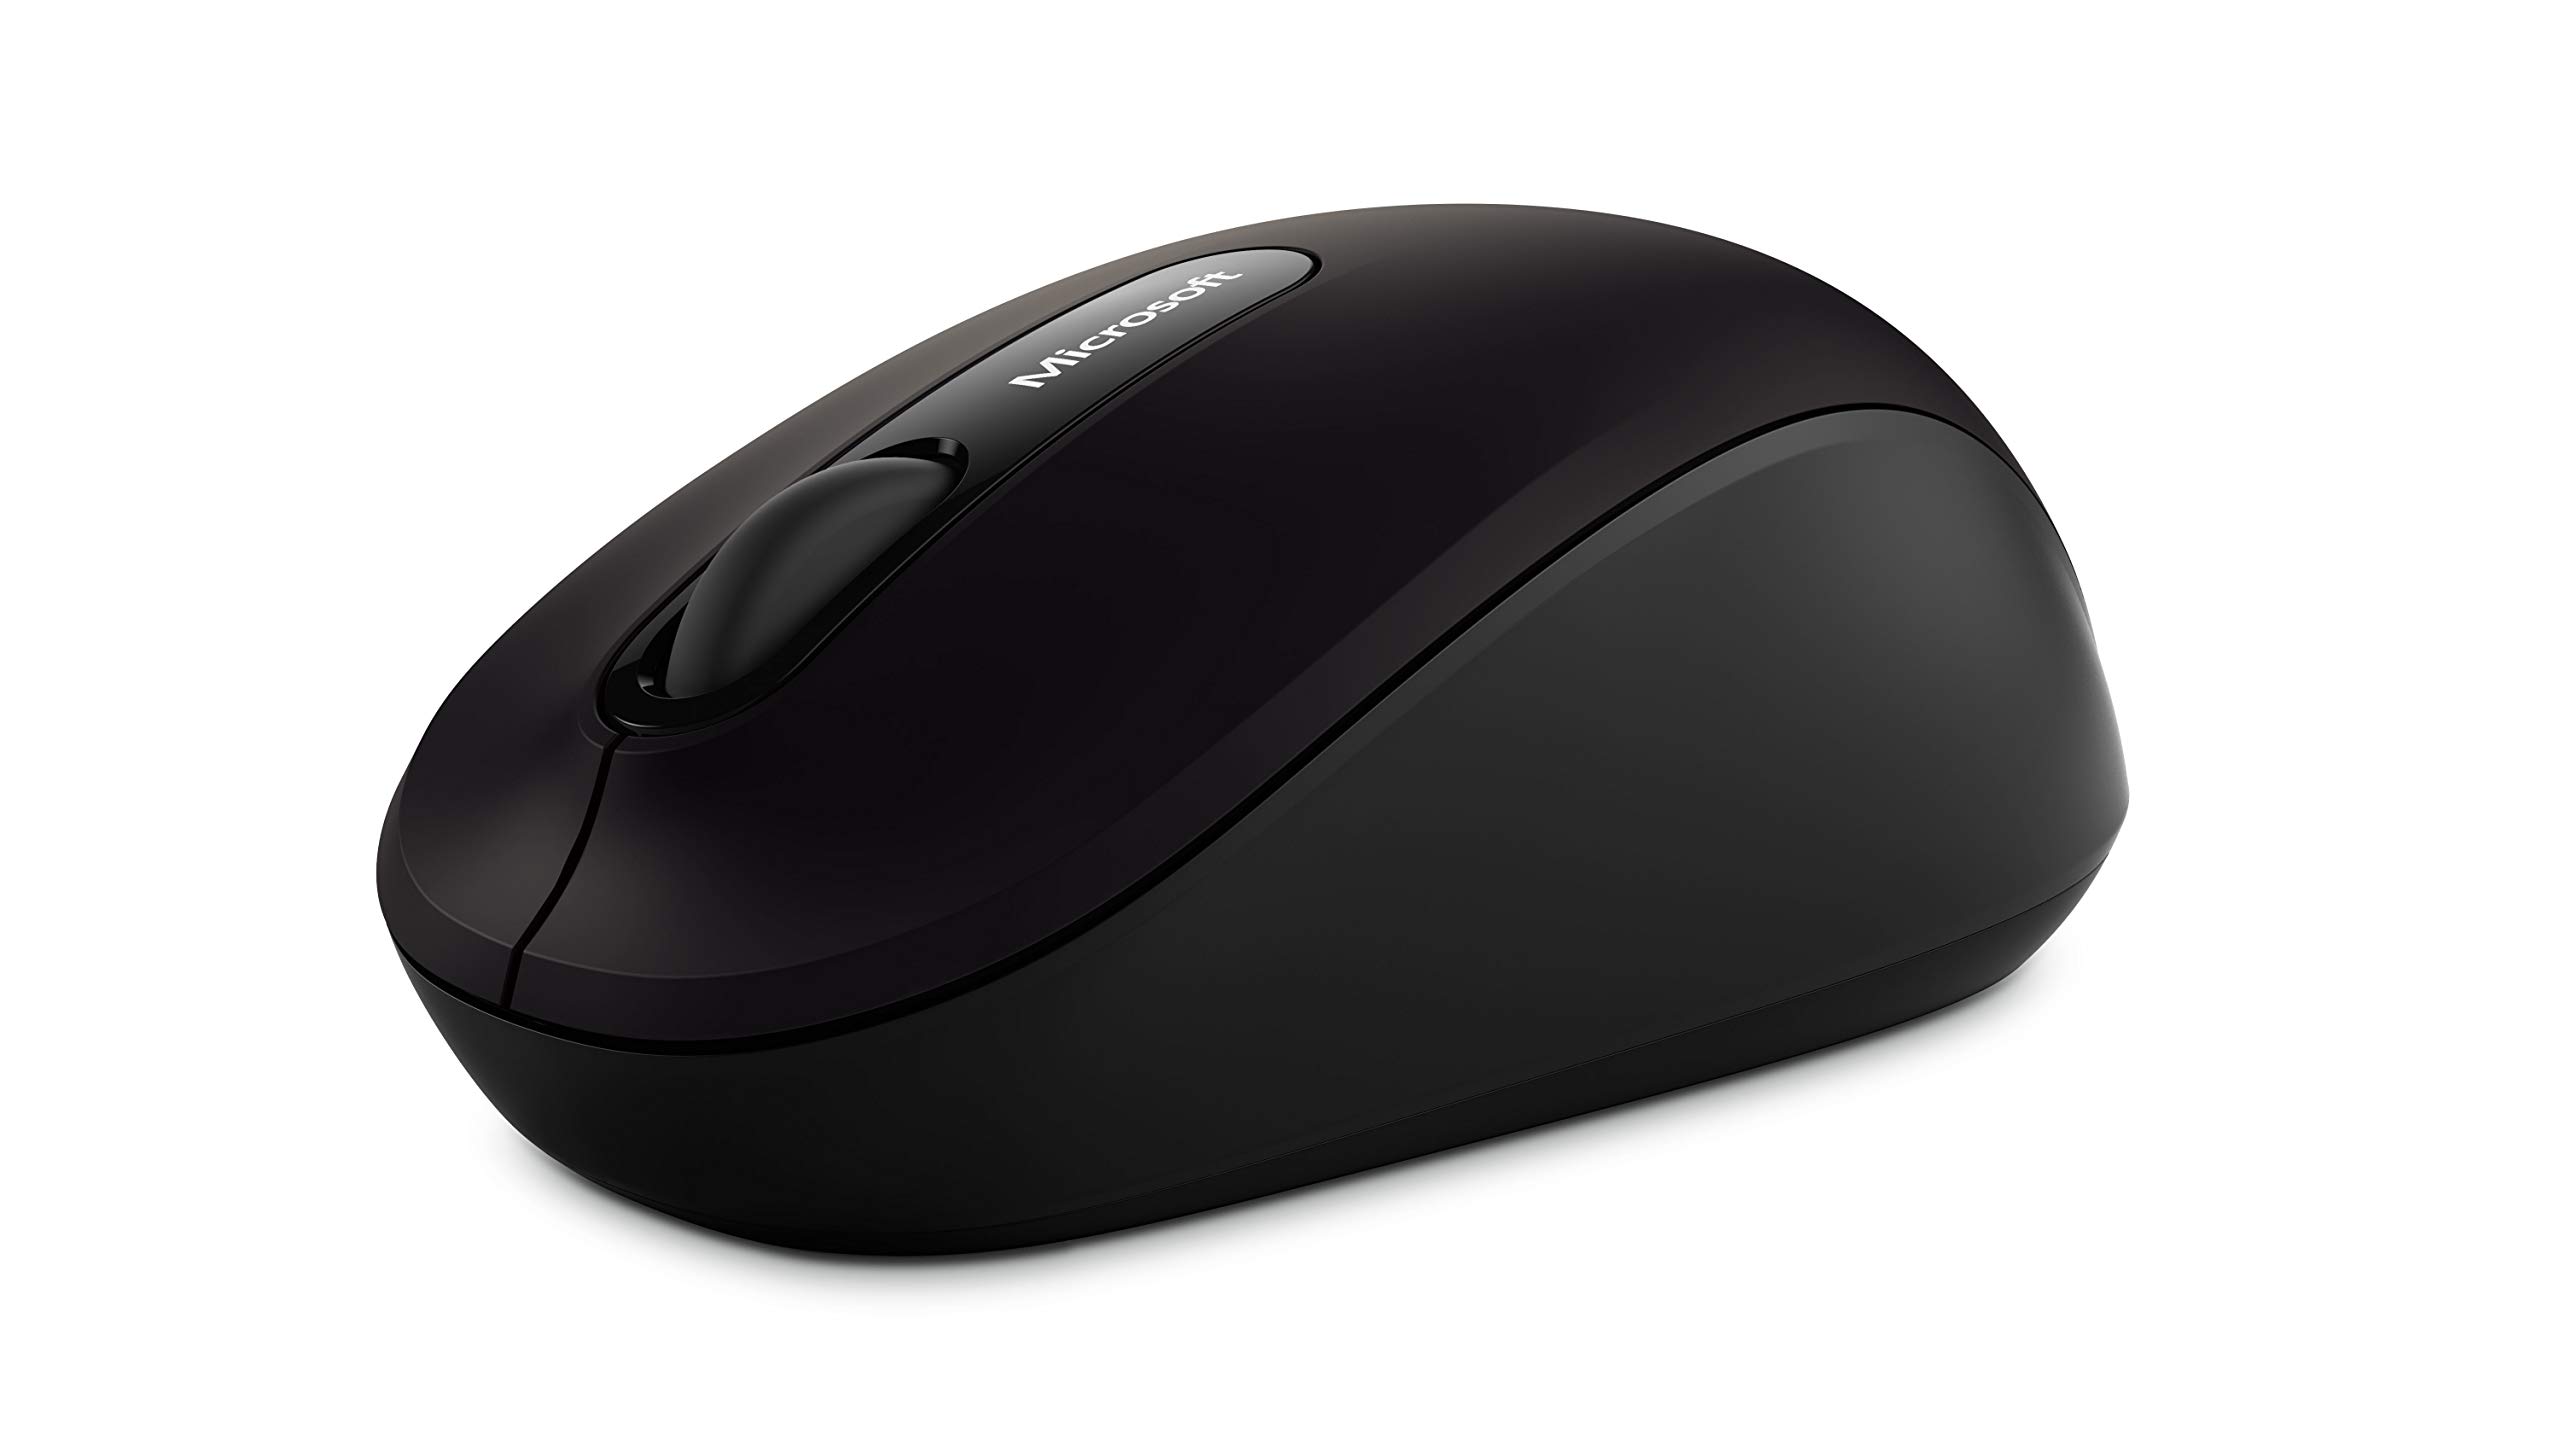 Microsoft Bluetooth Mobile Mouse 3600 (Maus, schwarz, kabellos über Bluetooth, für Rechts- und Linkshänder geeignet)